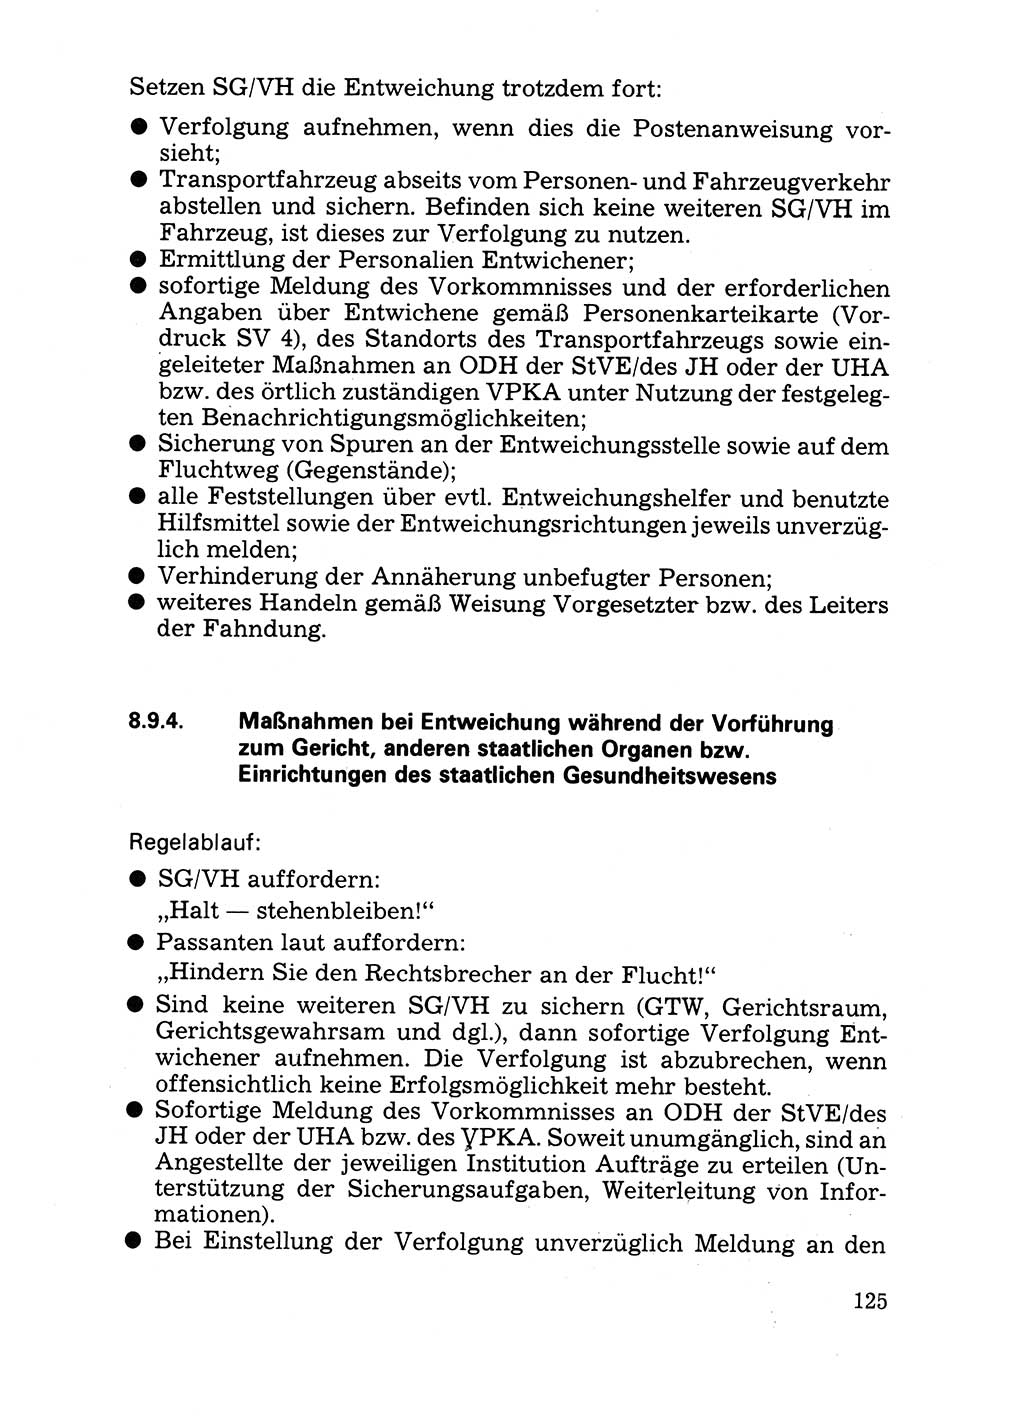 Handbuch für operative Dienste, Abteilung Strafvollzug (SV) [Ministerium des Innern (MdI) Deutsche Demokratische Republik (DDR)] 1981, Seite 125 (Hb. op. D. Abt. SV MdI DDR 1981, S. 125)